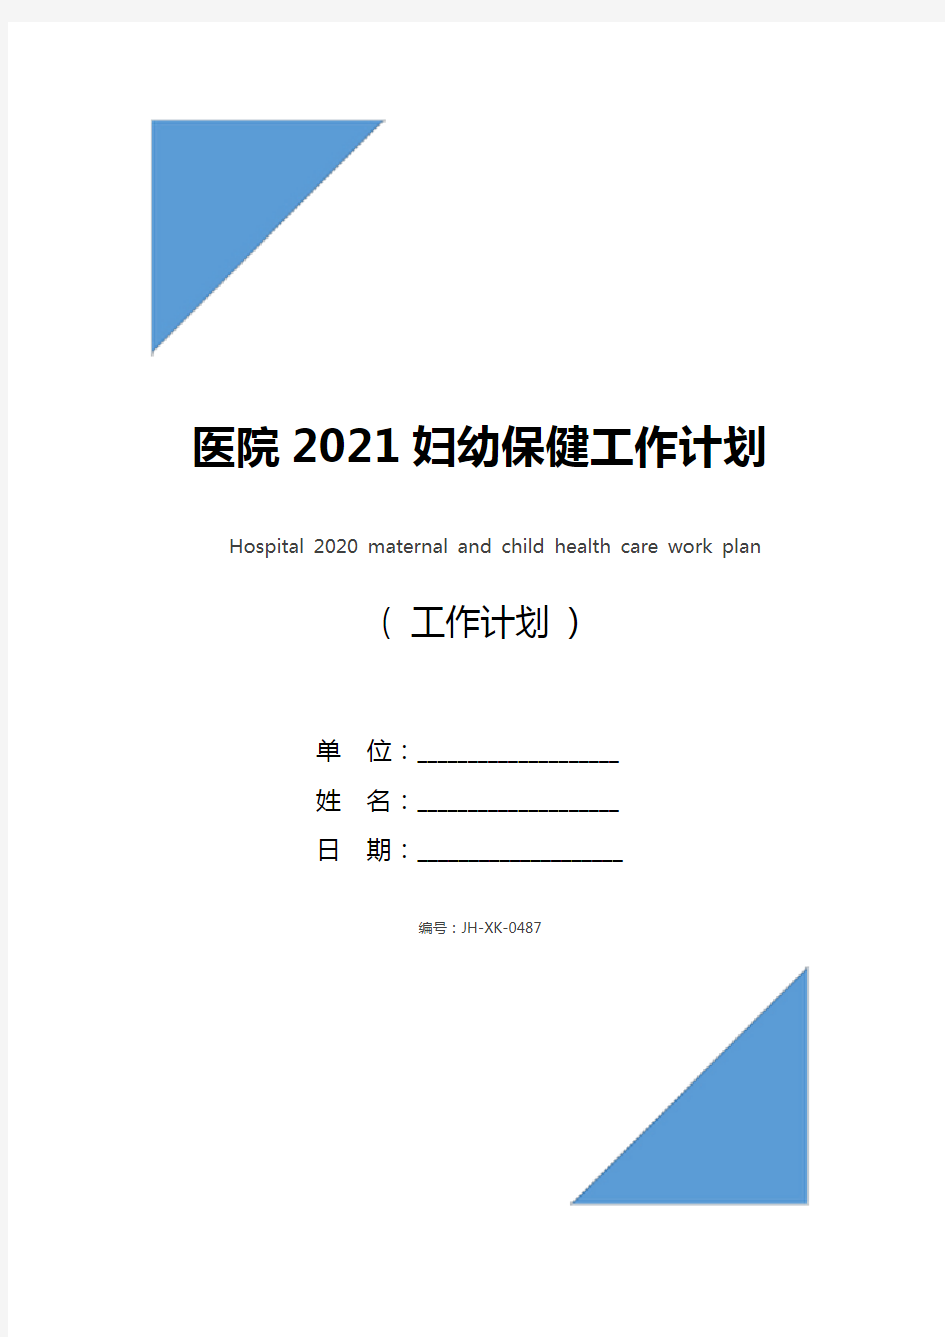 医院2021妇幼保健工作计划(新版)